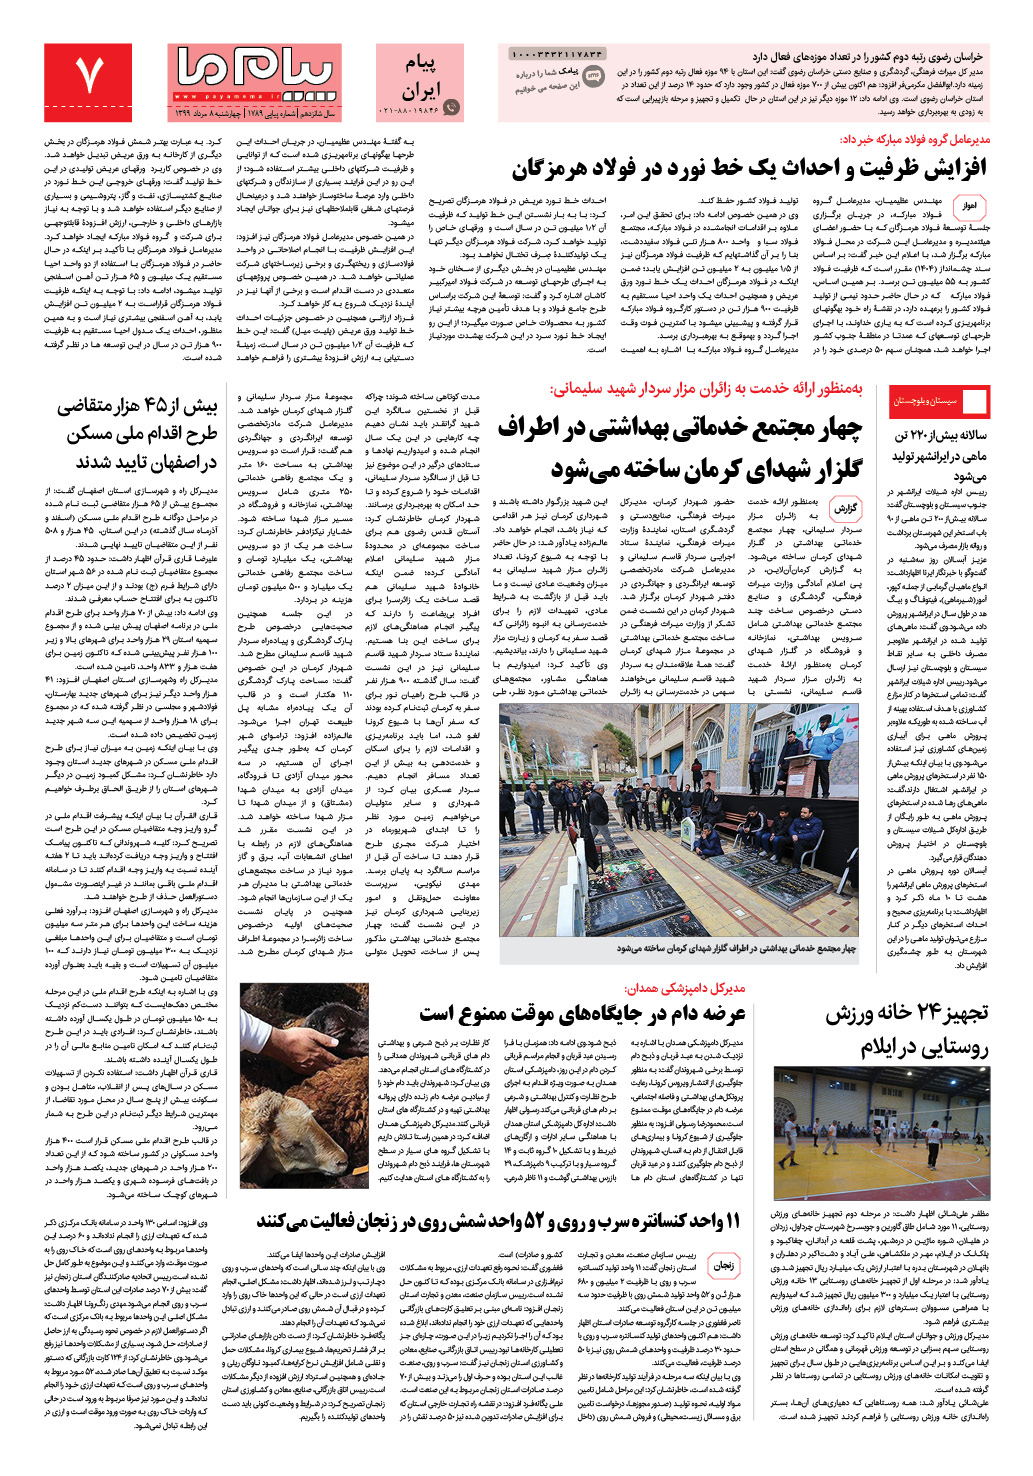 صفحه پیام ایران شماره 1789 روزنامه پیام ما